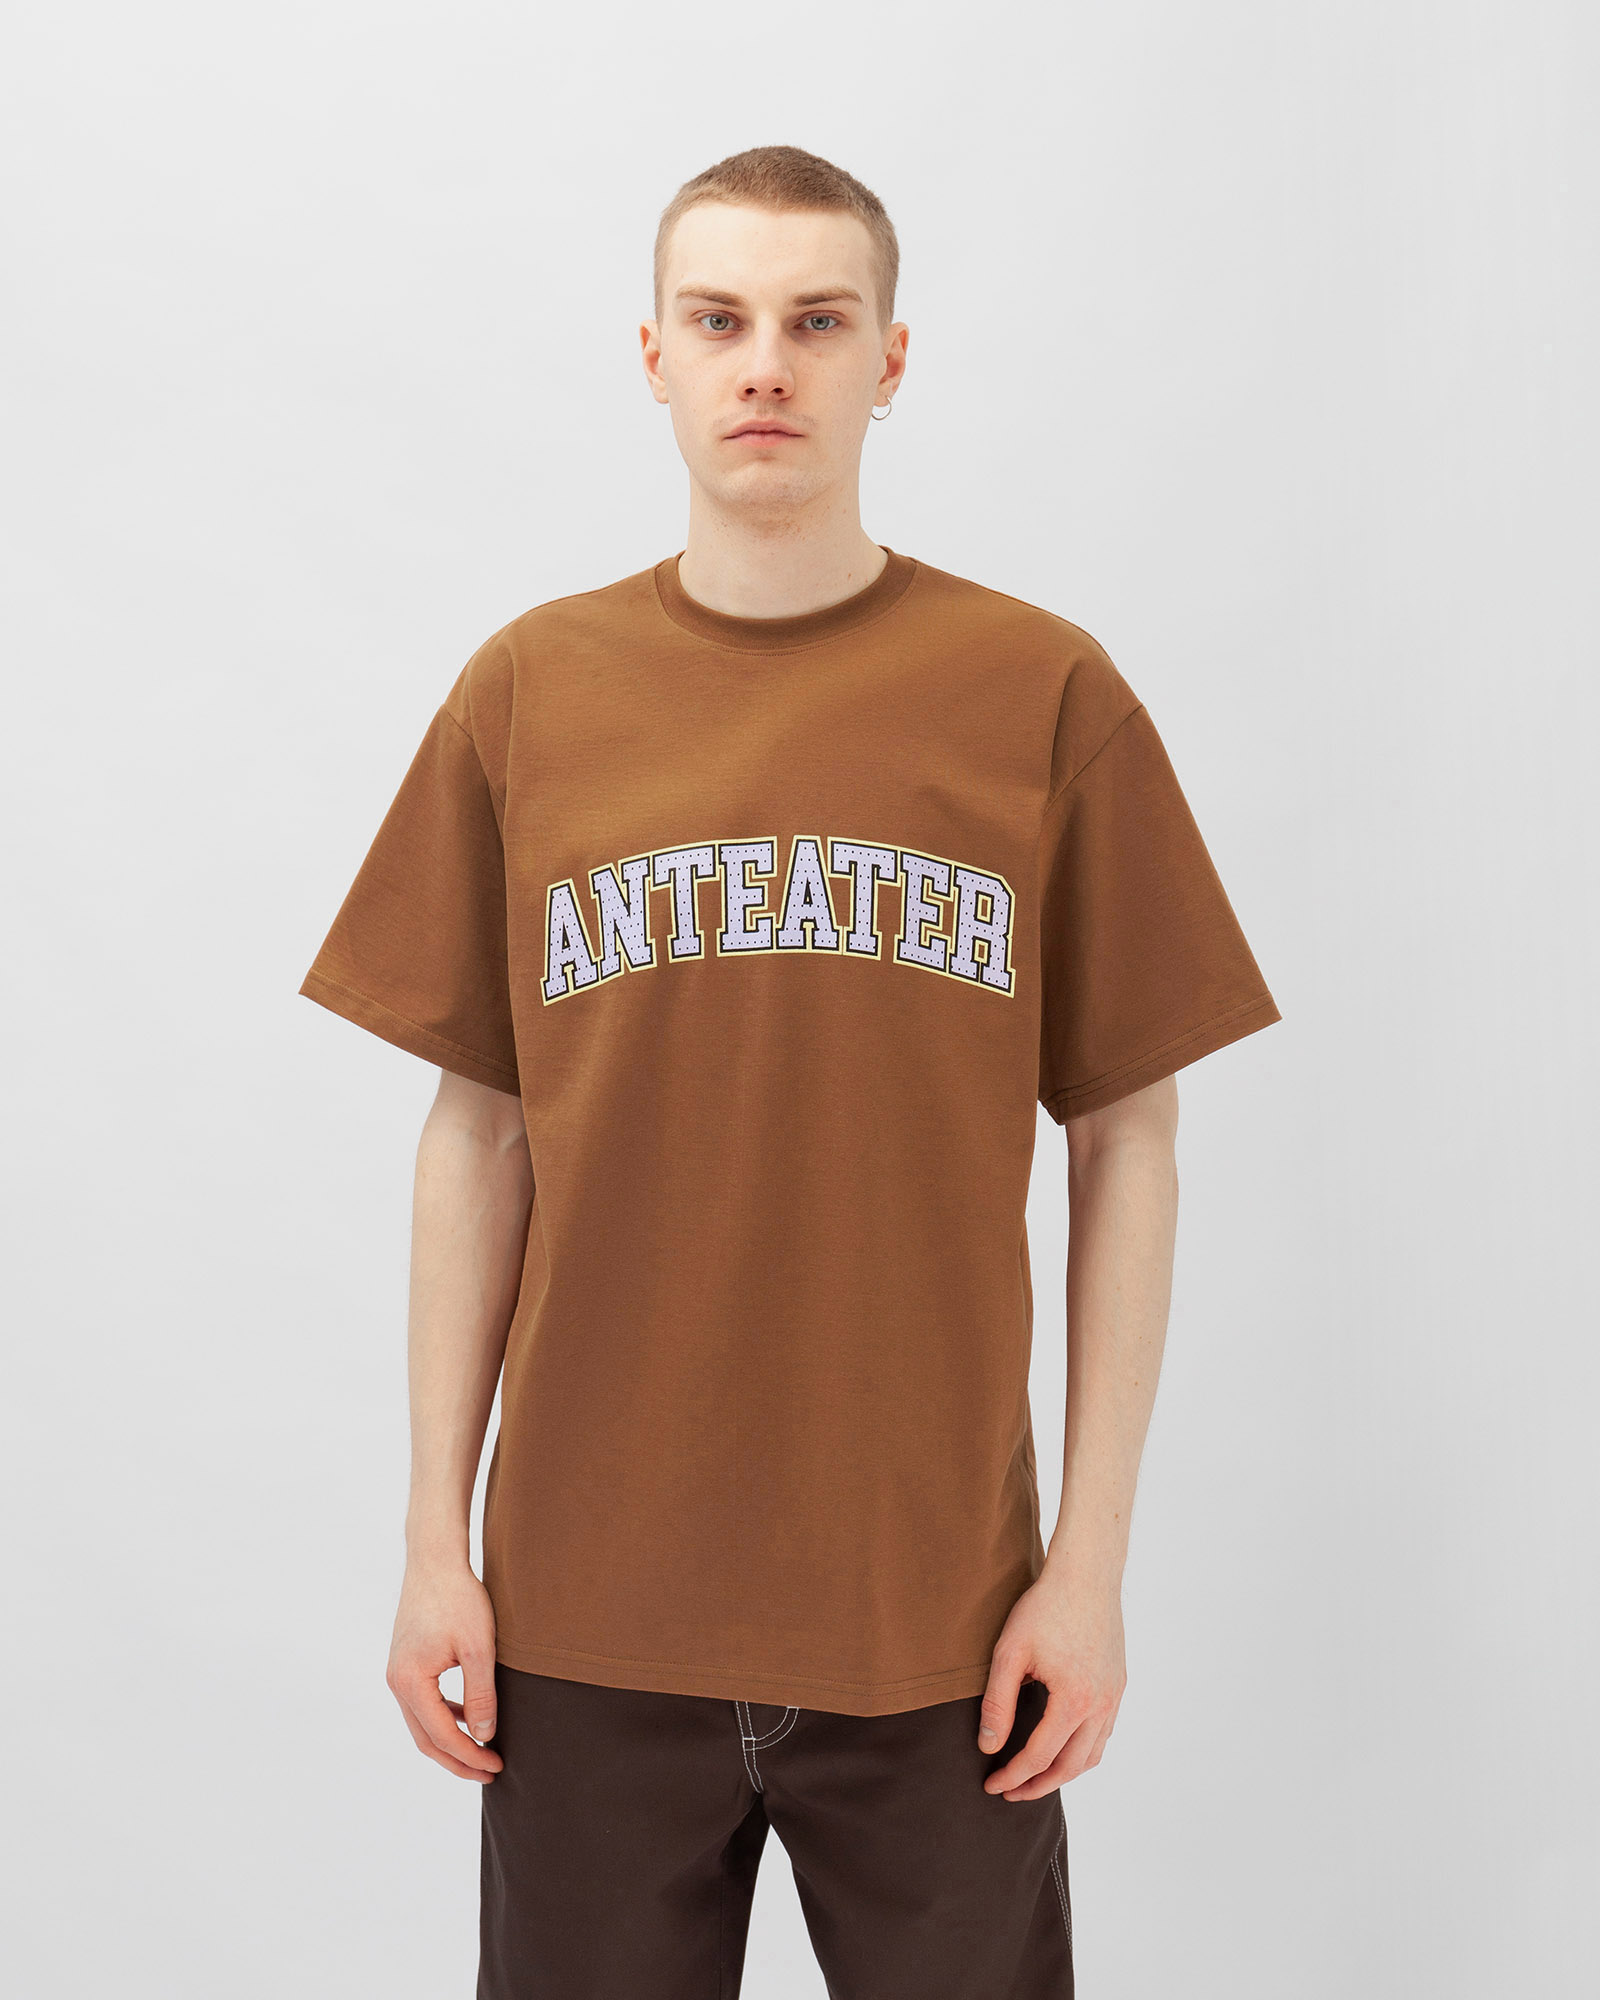 Футболка Anteater Tee - фото 1